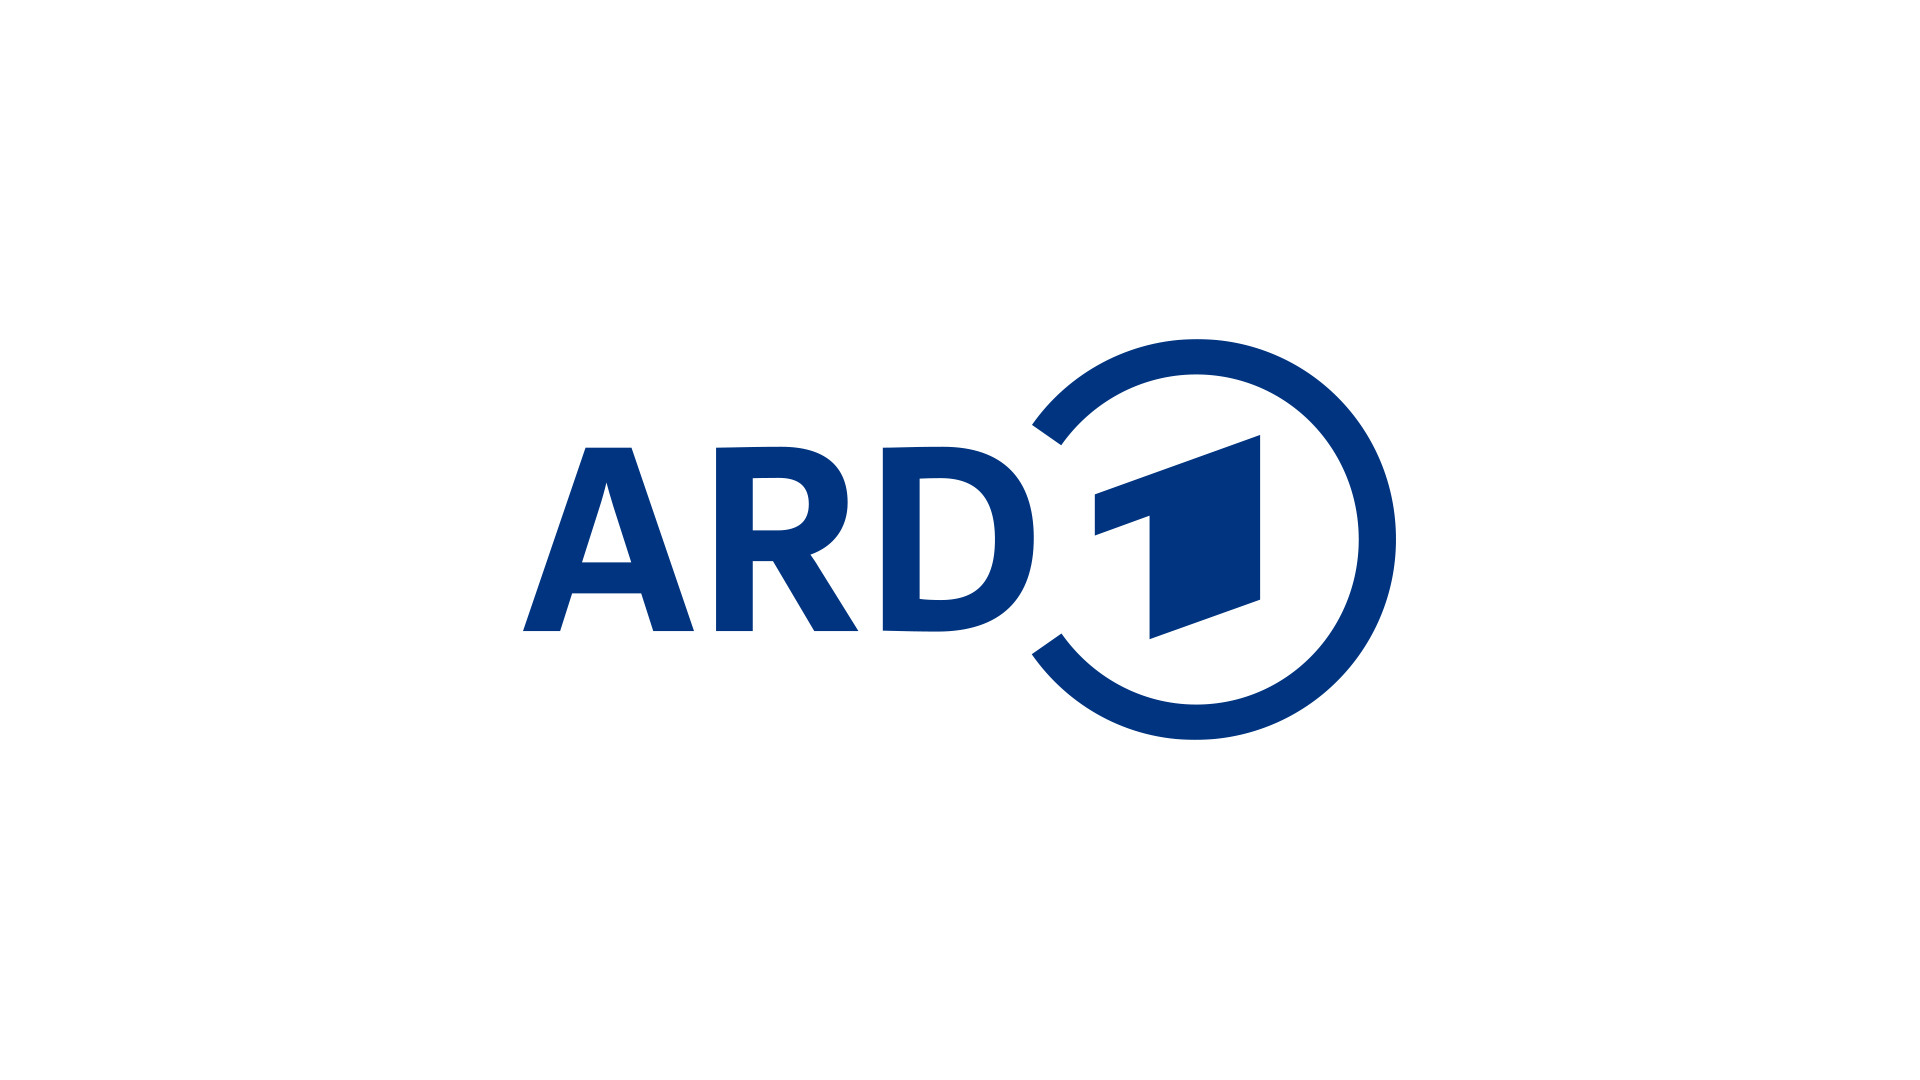 ARD-Forum
BR, HR, MDR, NDR, Radio Bremen, RBB, SR, SWR, WDR, Deutschlandradio, arte, 3sat
Die ARD ist die Arbeitsgemeinschaft der öffentlich-rechtlichen Rundfunkanstalten der Bundesrepublik Deutschland.